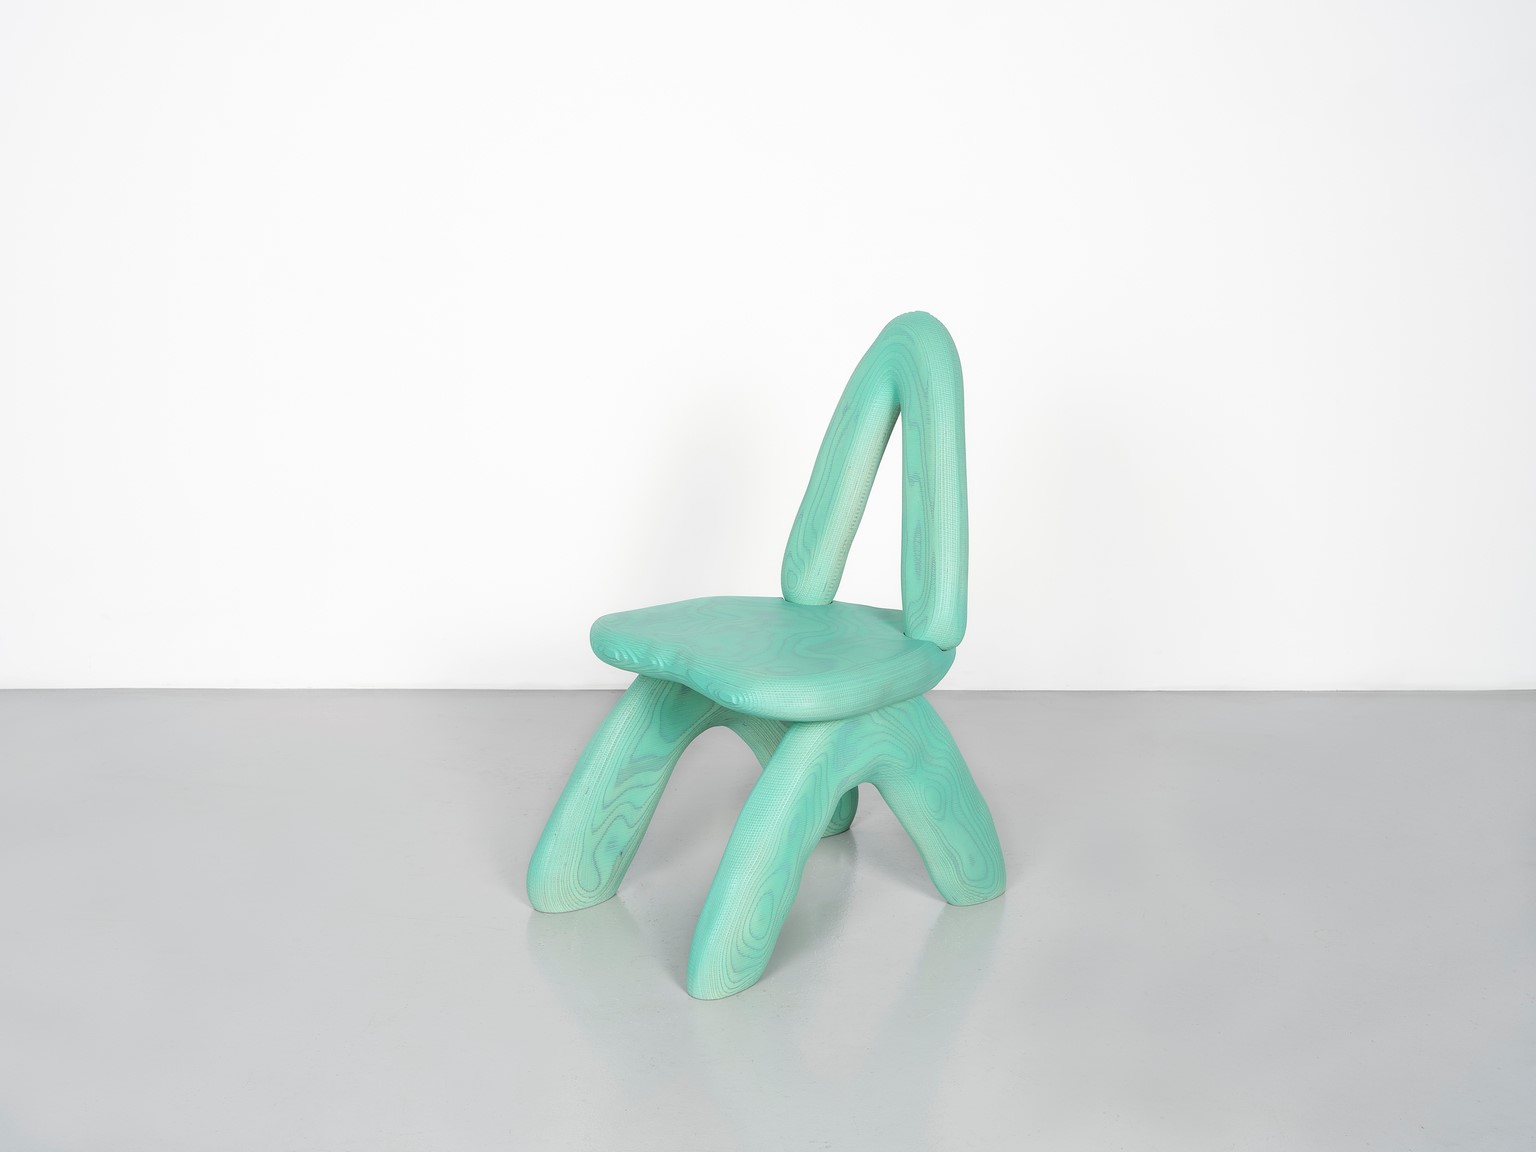 Daniel Arsham, Dino Chair – Green, 2021